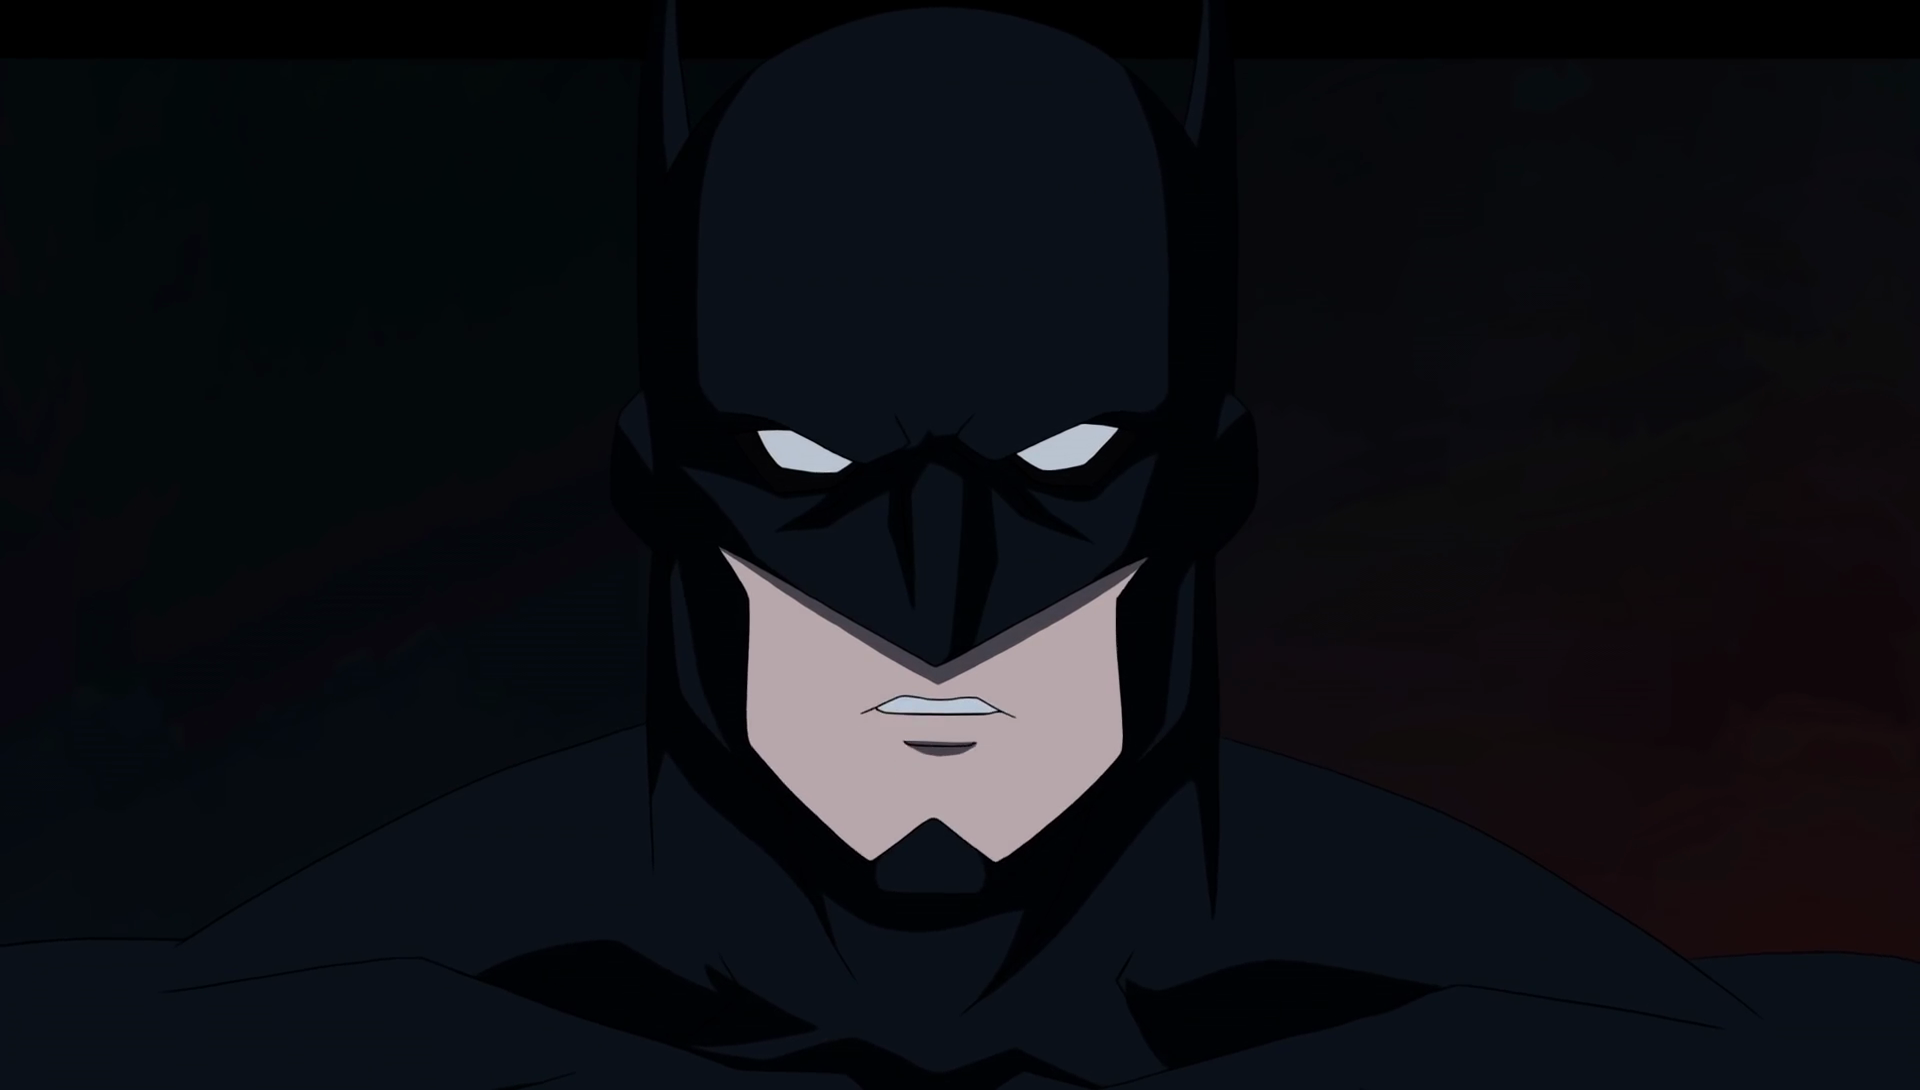 Batman justice league. Тёмная Вселенная (Justice League Dark 2017). Бэтмен темная лига справедливости.